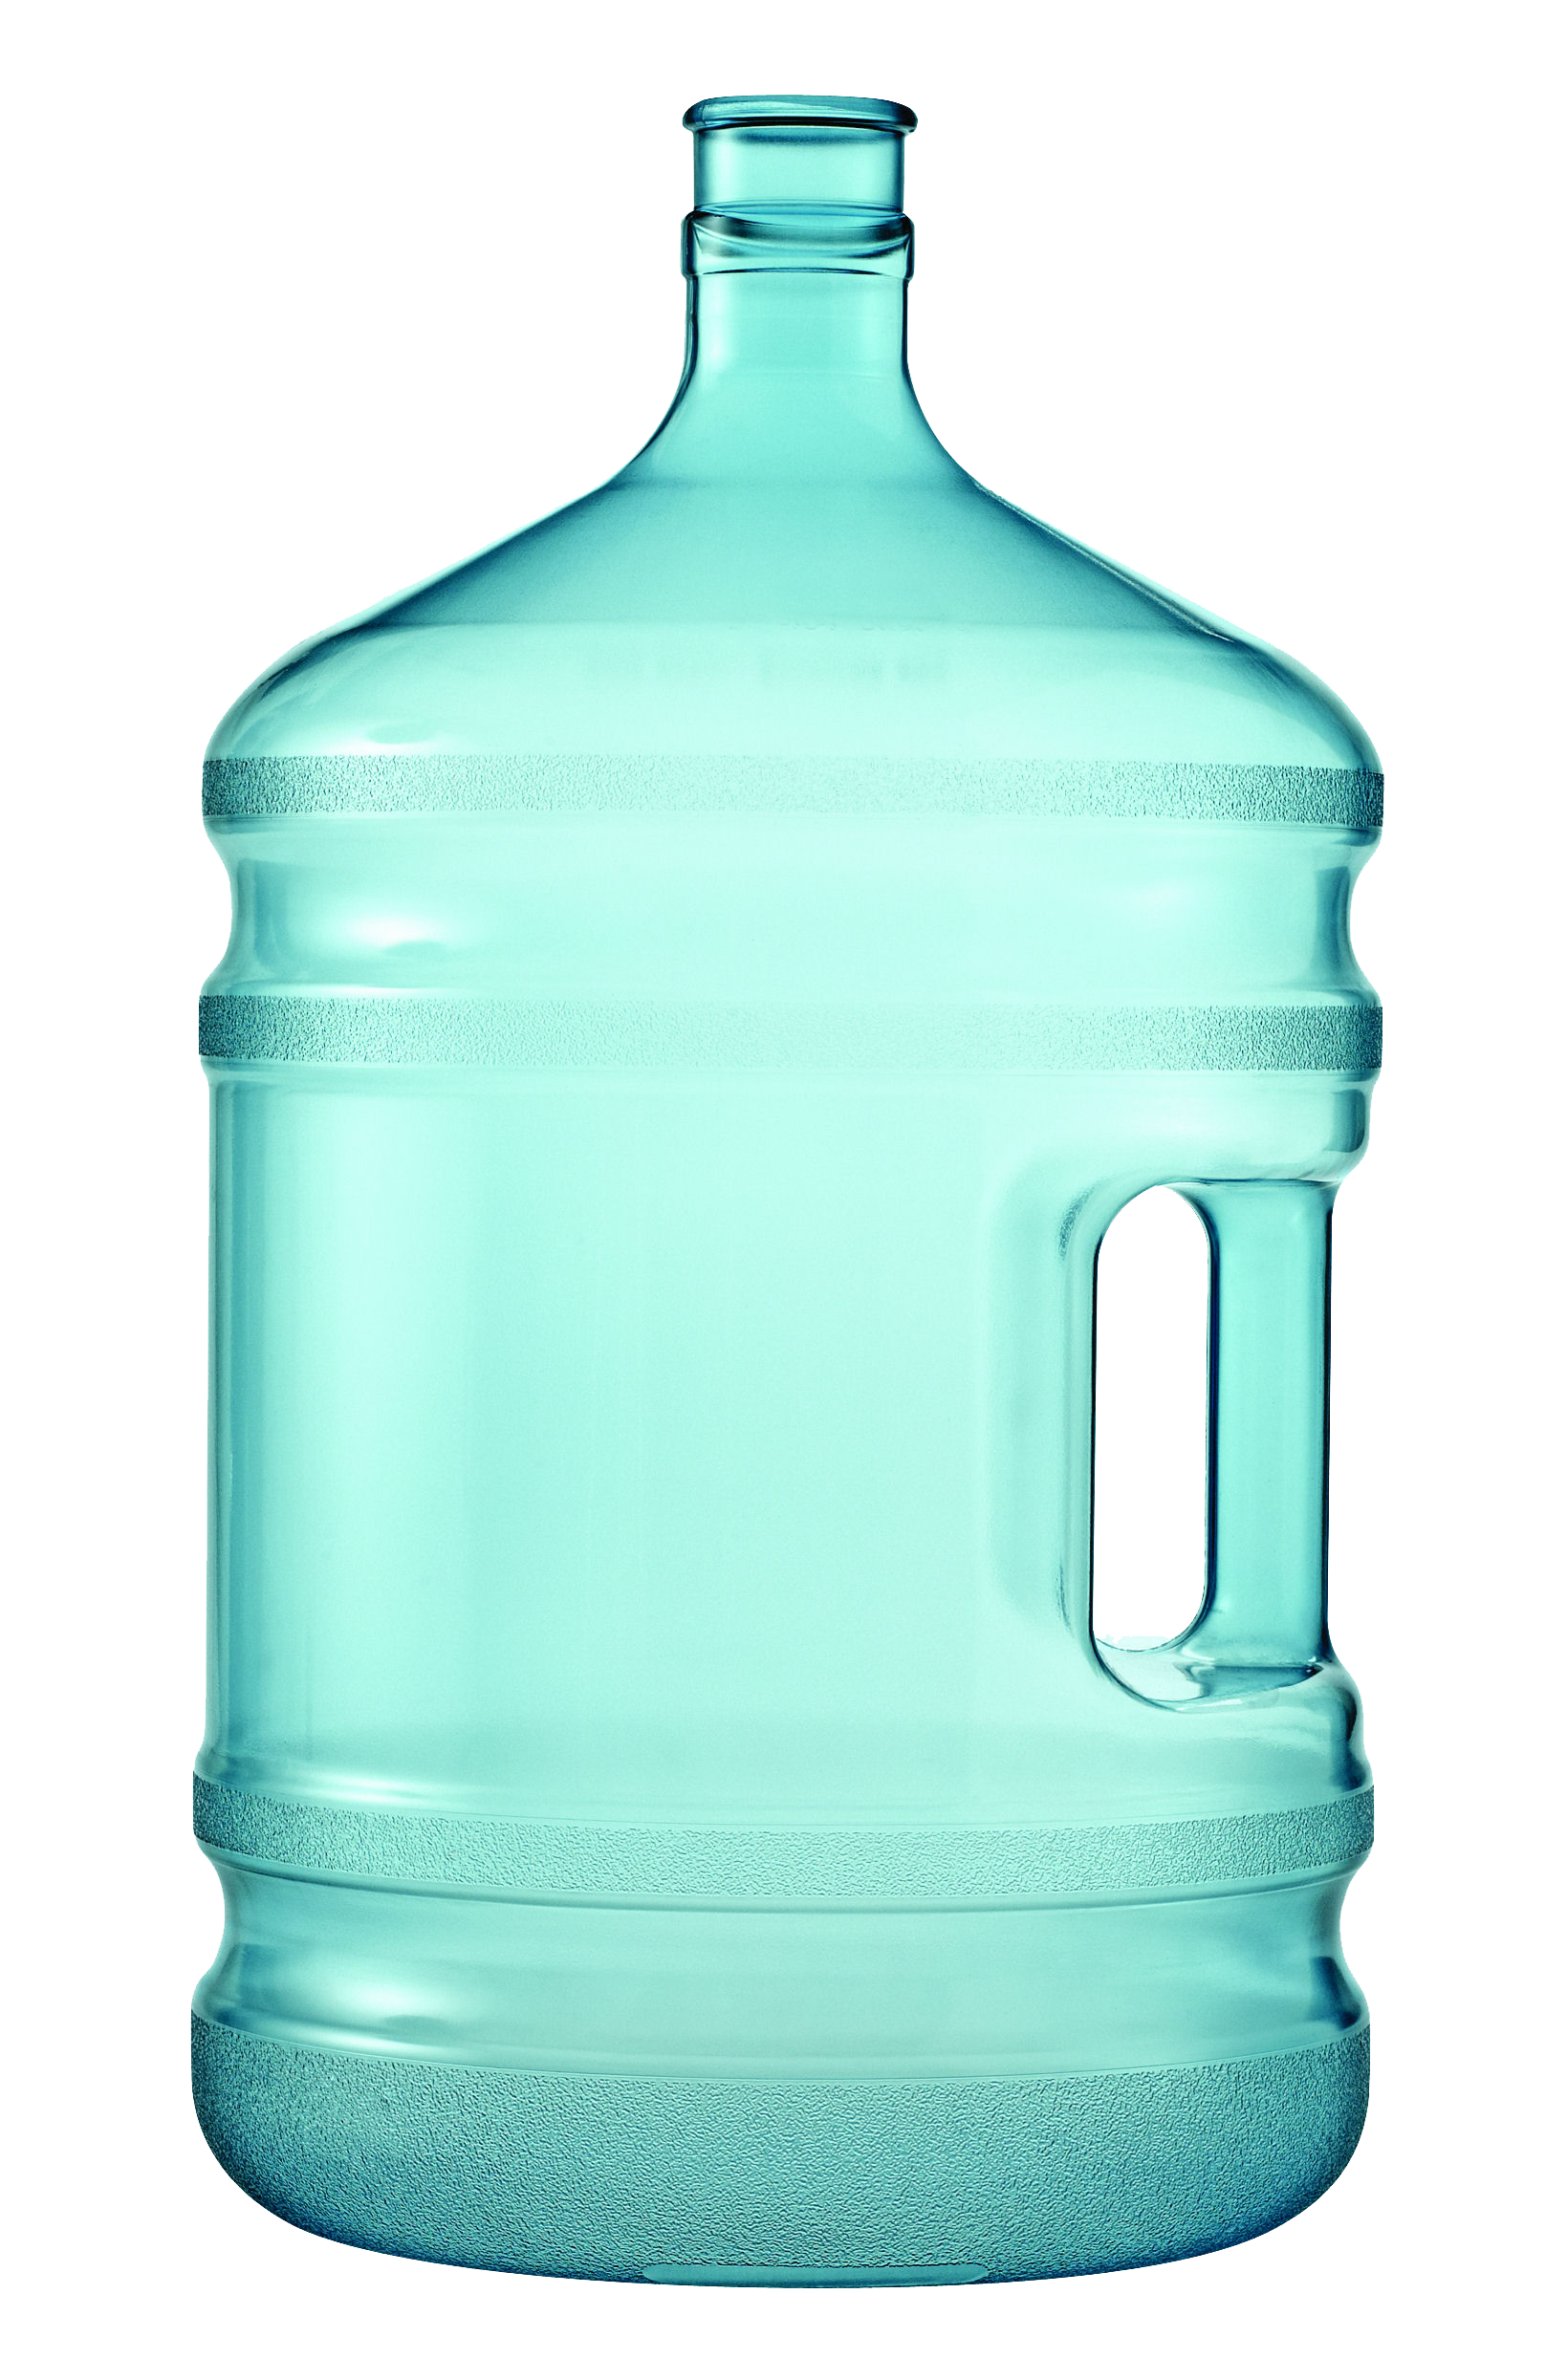 Bouteille d'eau, bouteille d'eau minérale